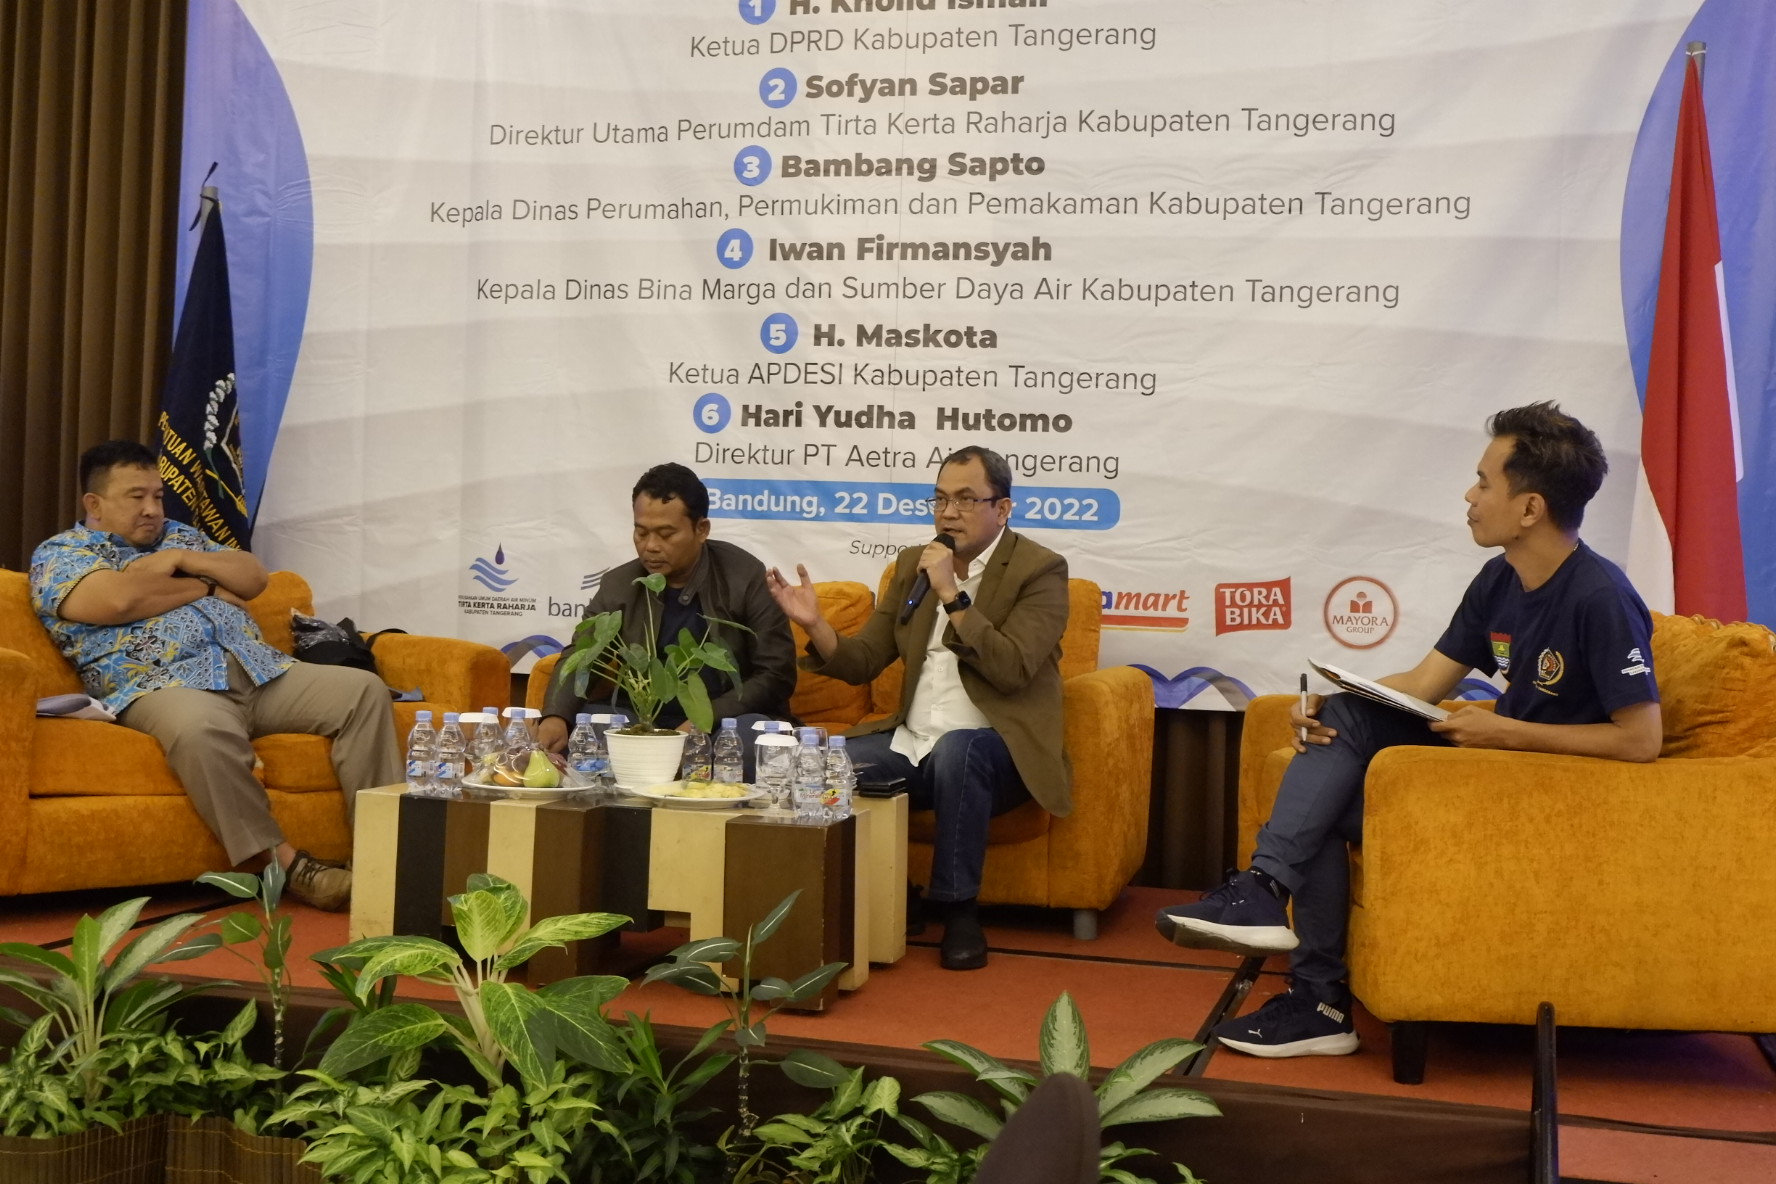 Fokus Group Discussion (FGD) dengan tema "Mewujudkan Pelayanan Air Bersih di Kabupaten Tangerang Hingga ke Pelosok Desa"